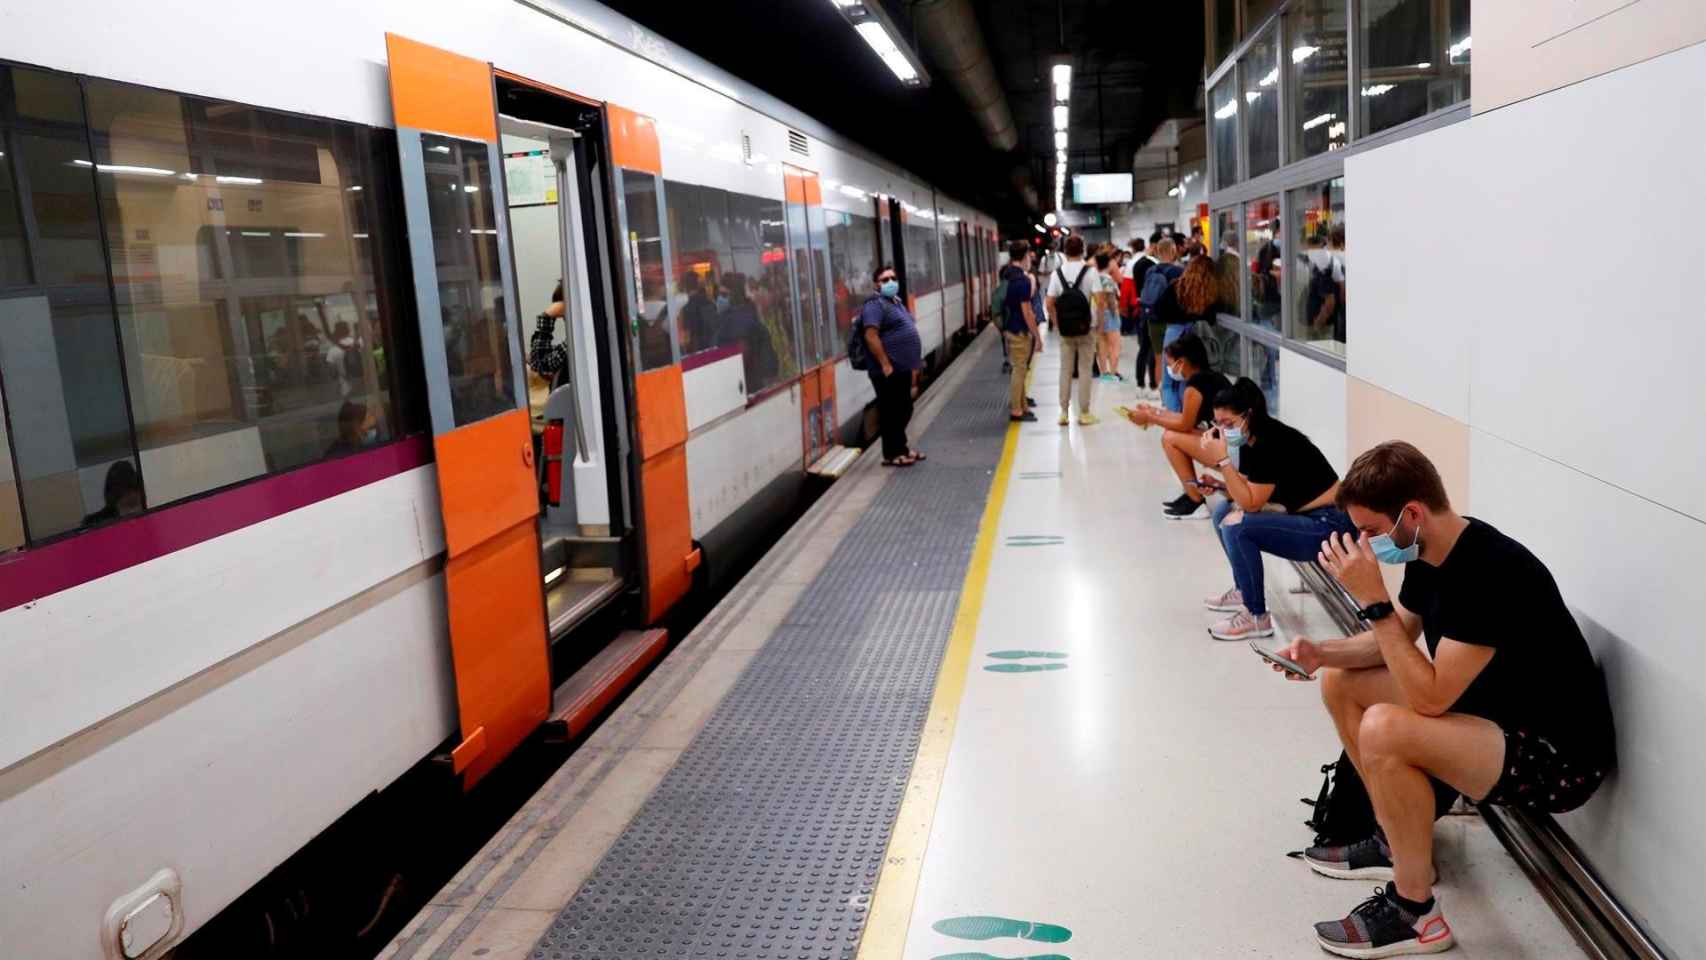 Varios pasajeros esperan ante un tren parado durante la huelga de maquinistas de Renfe en un andén de la estación de Barcelona-Sants